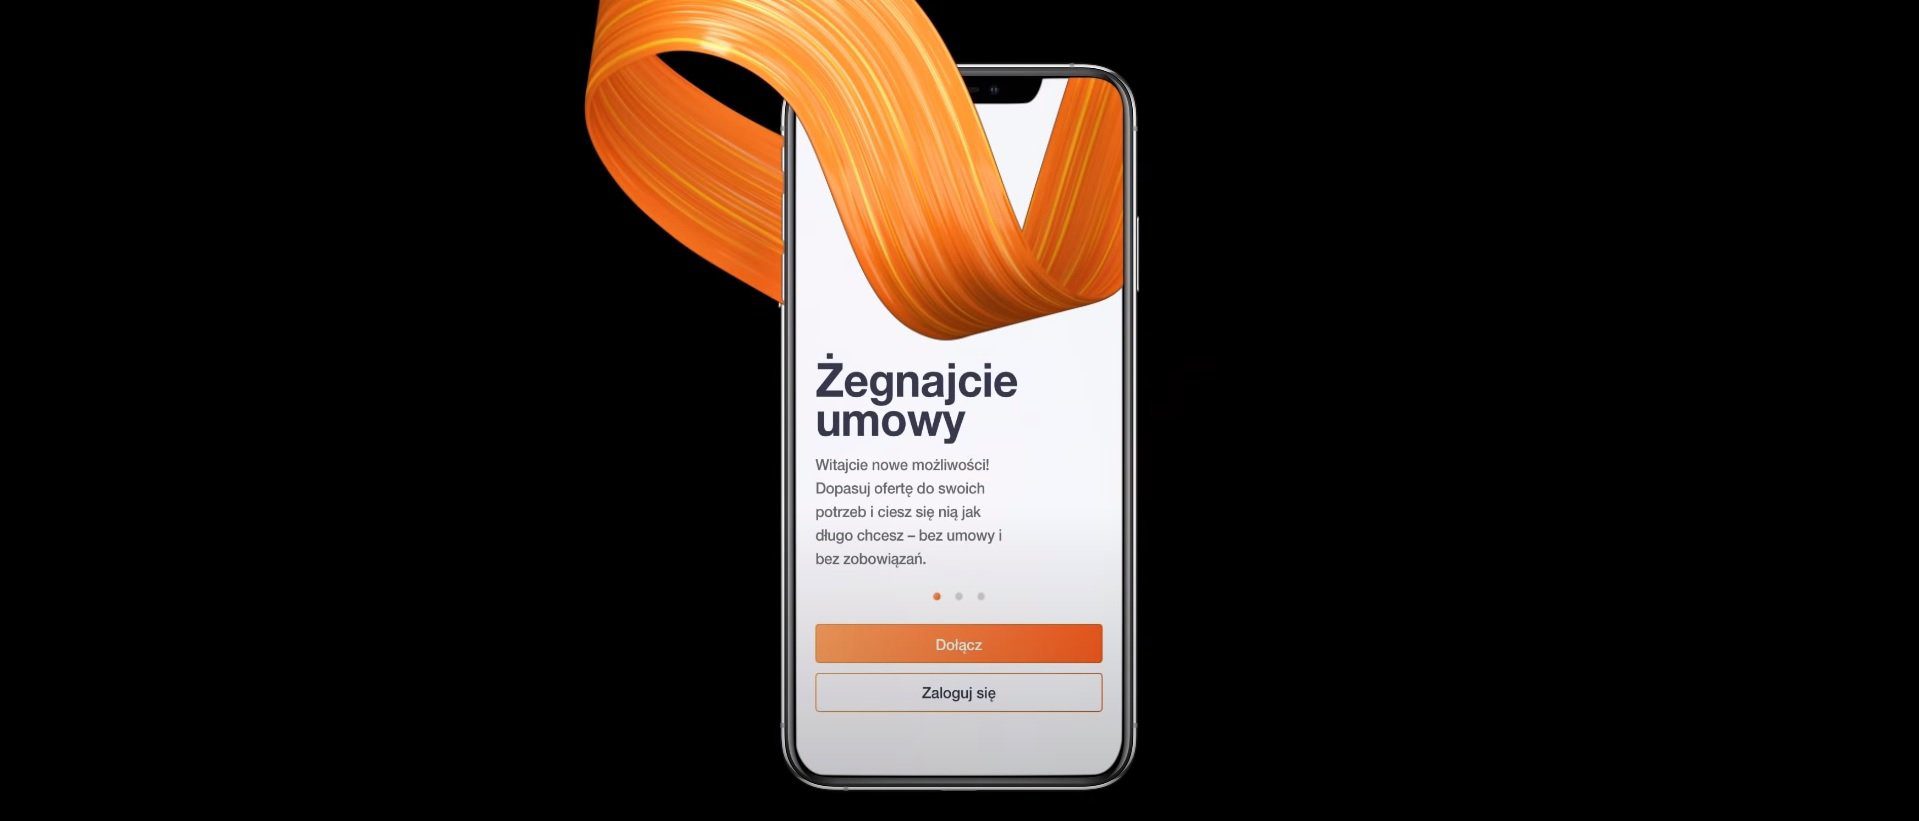 Laden Sie die Orange Flex-Anwendung aus dem AppGallery Store herunter und Sie erhalten 10 GB Internet kostenlos 197